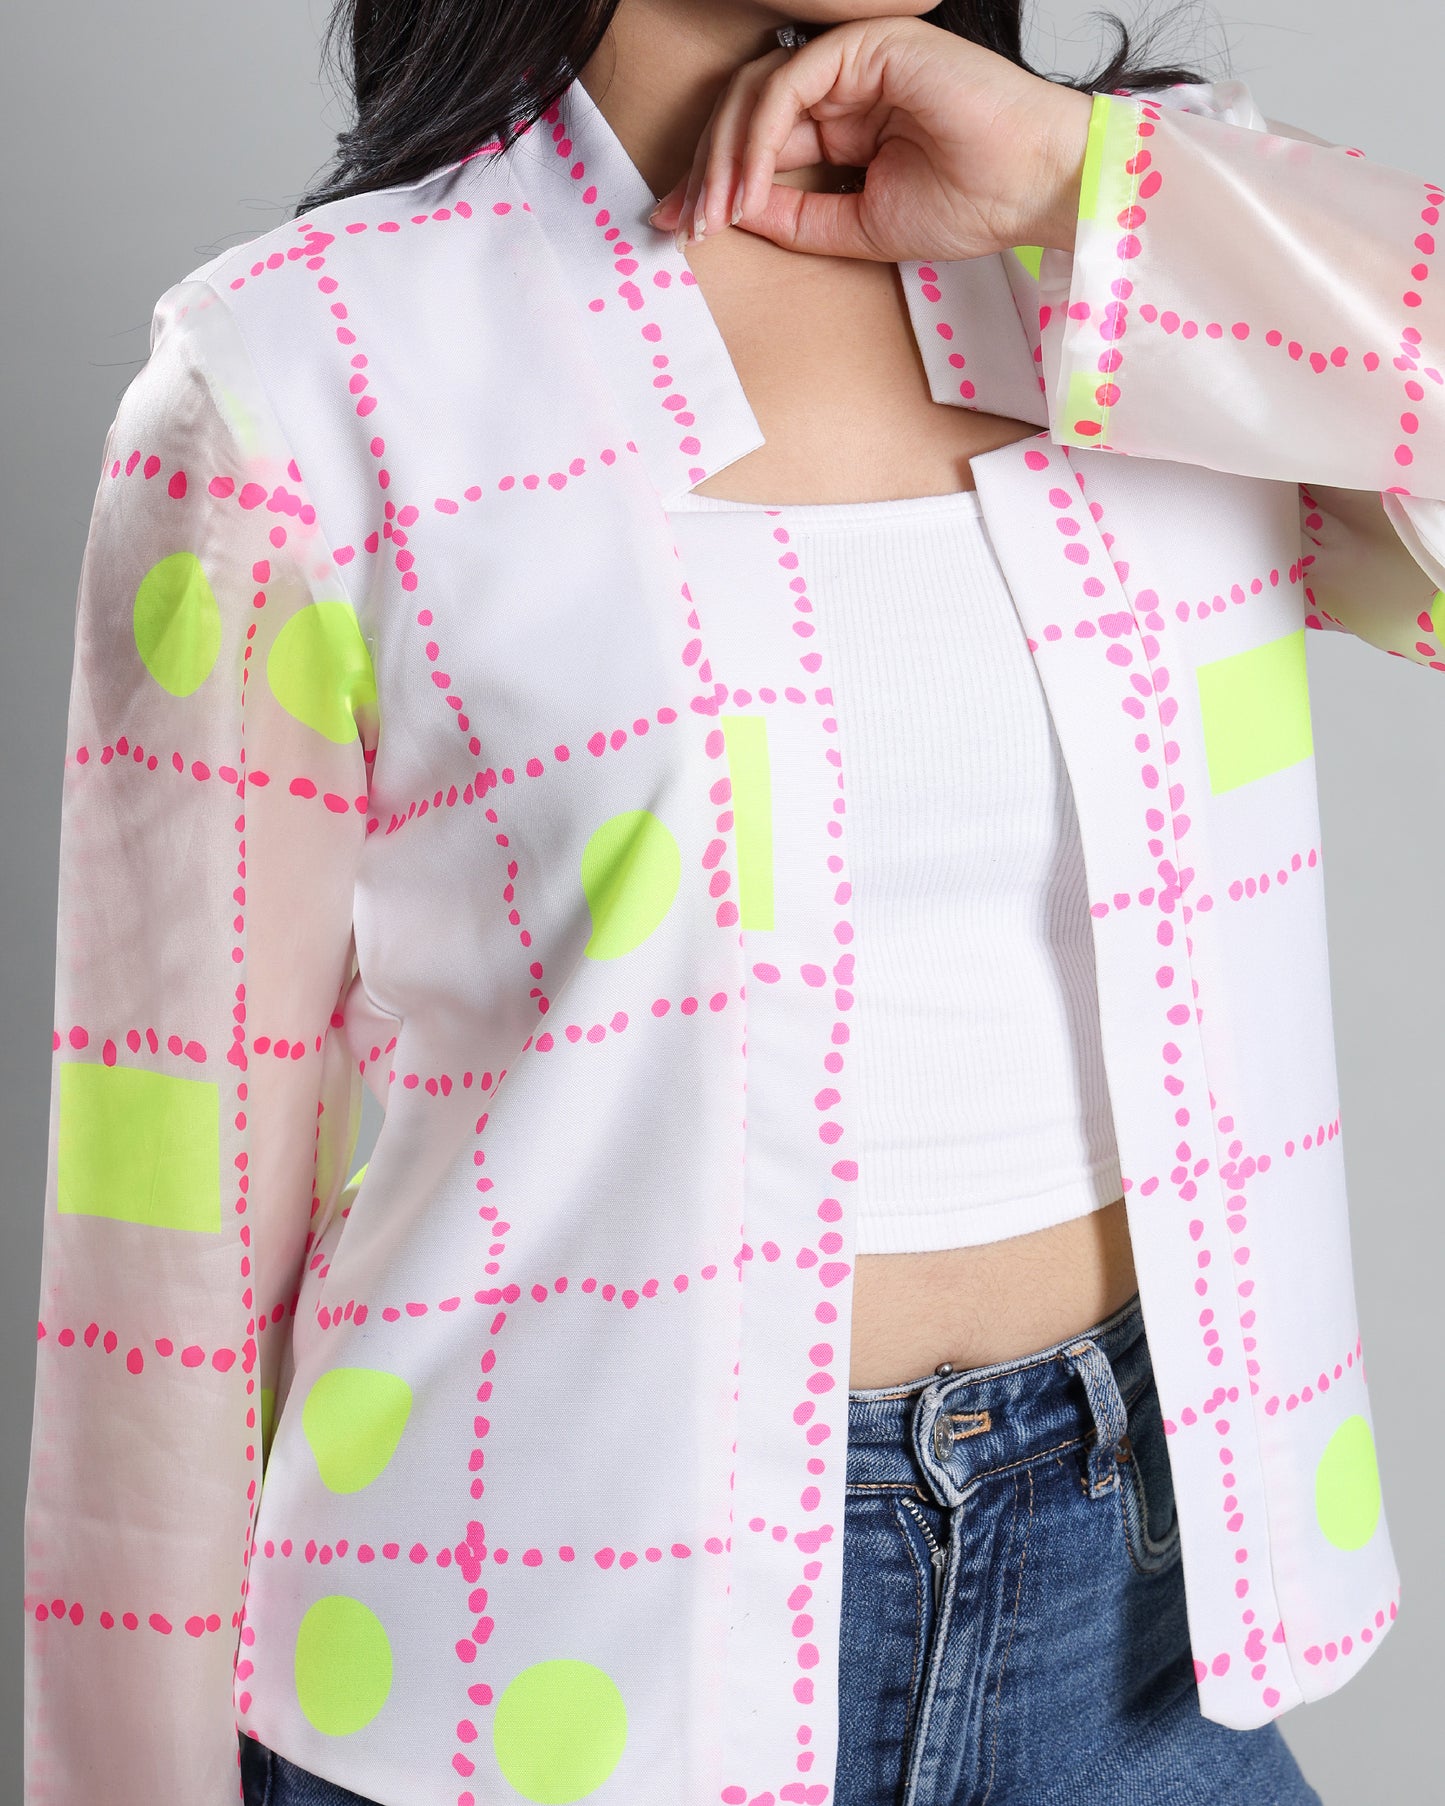 Light Up the Trend: Women's Neon Print Jacket